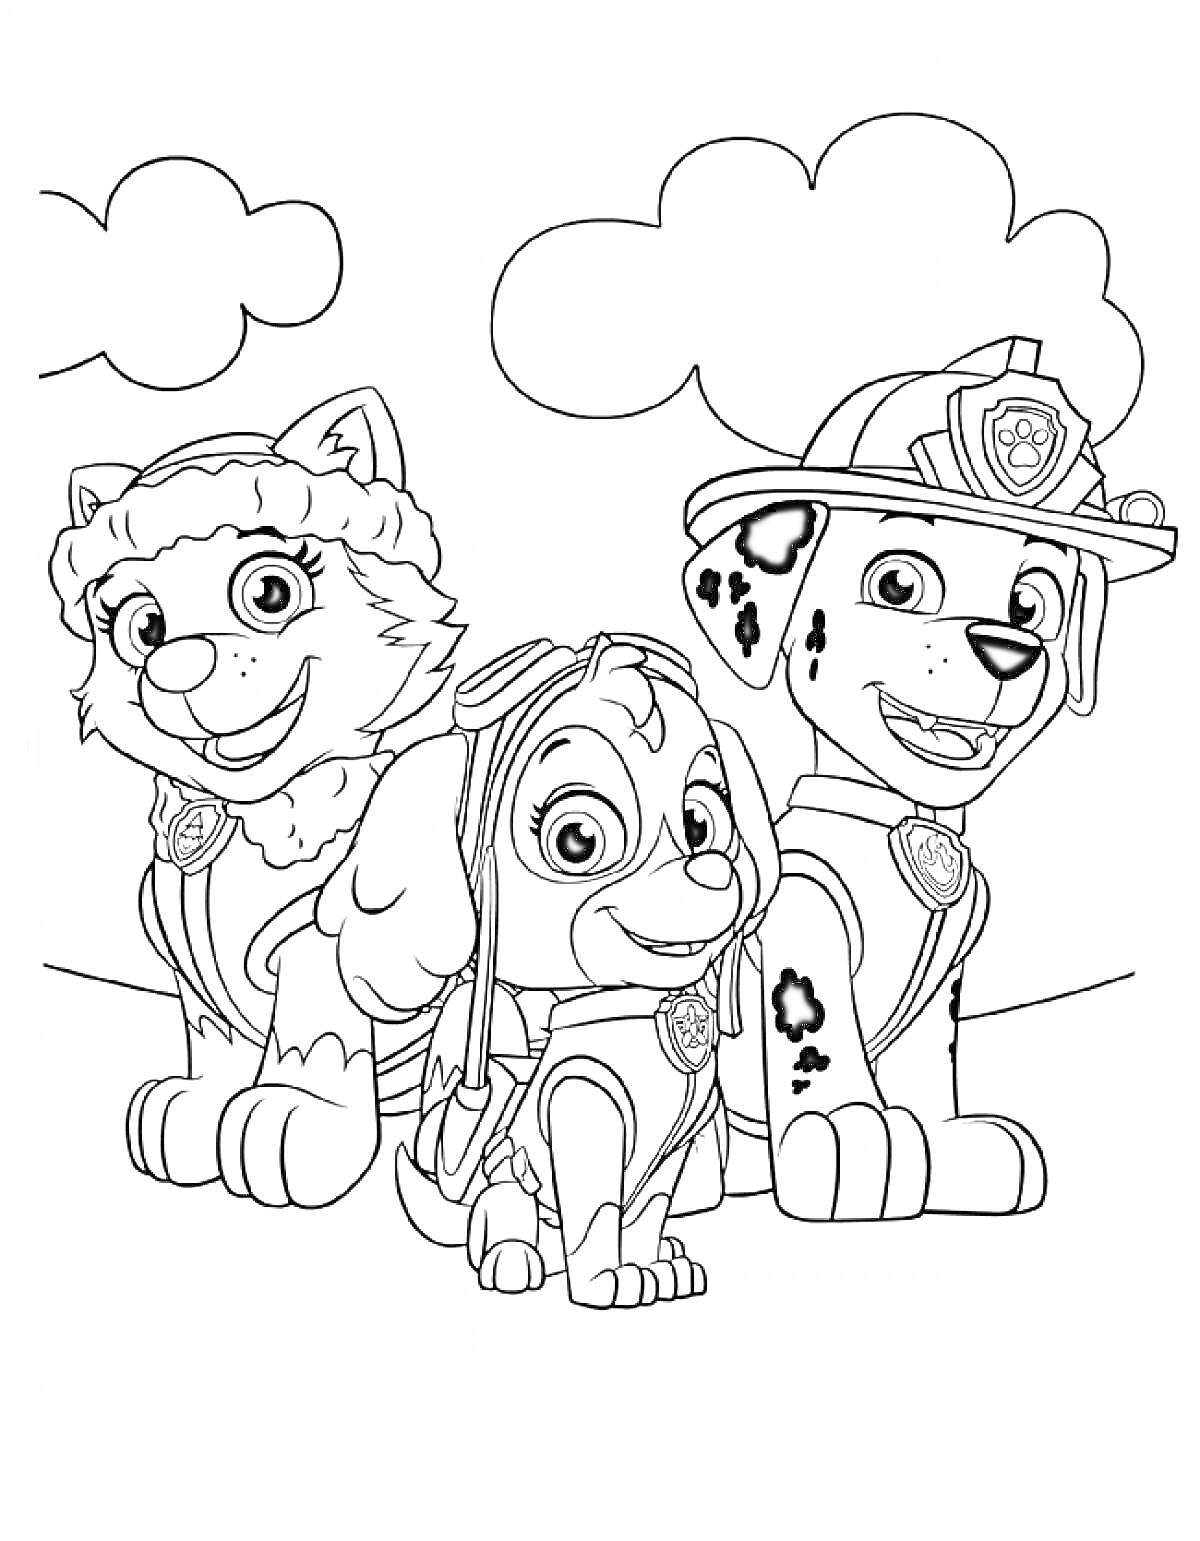 Раскраска Щенячий Патруль - три щенка: девочка-хаски, девочка-кокапу, далматинец в форме пожарного, облака